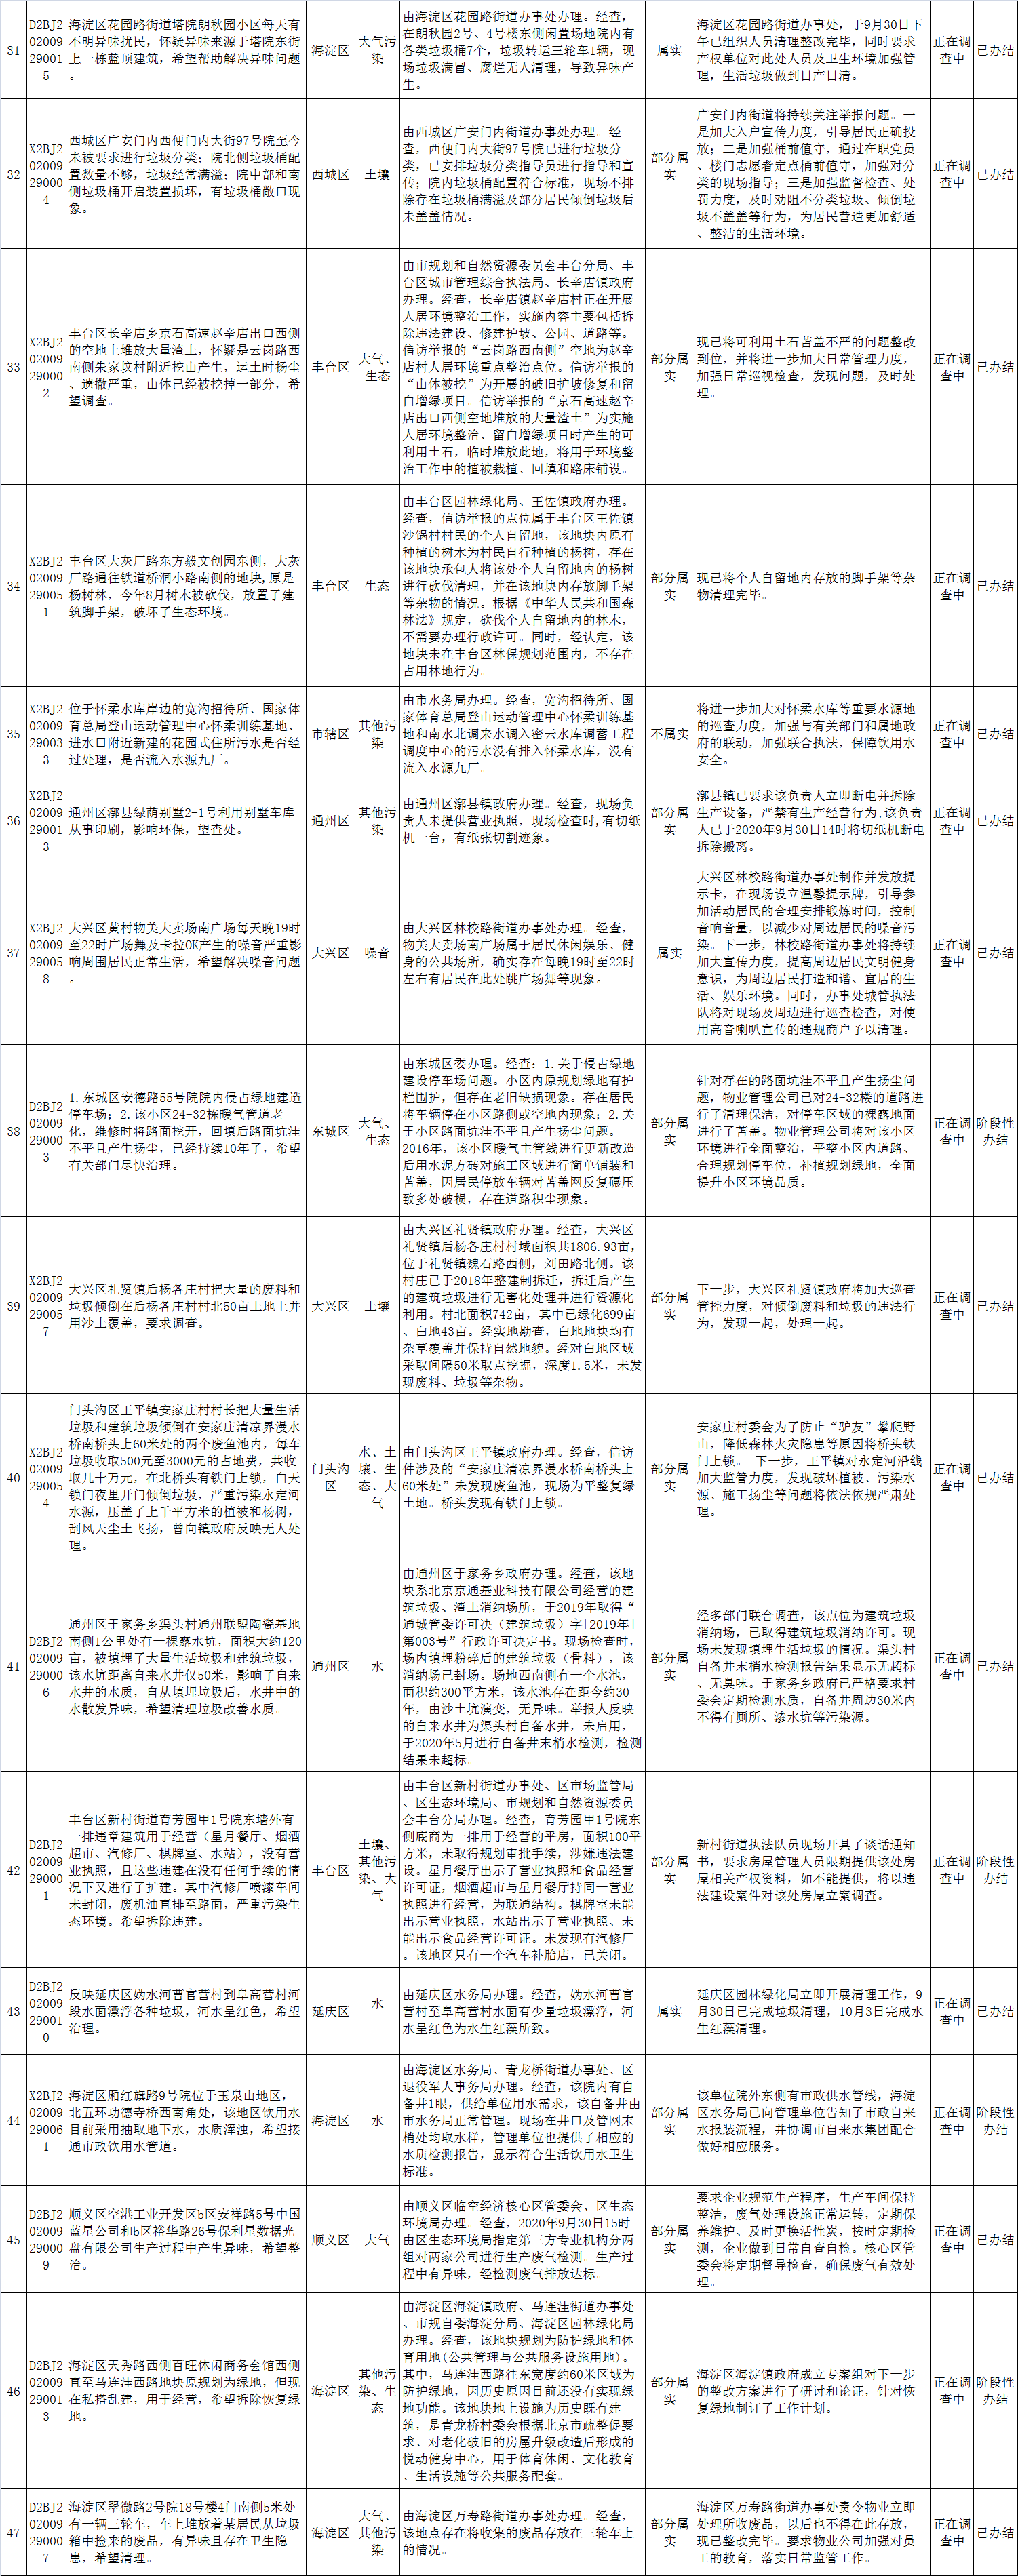 北京市群众信访举报转办和边督边改公开情况一览表(第三十批)